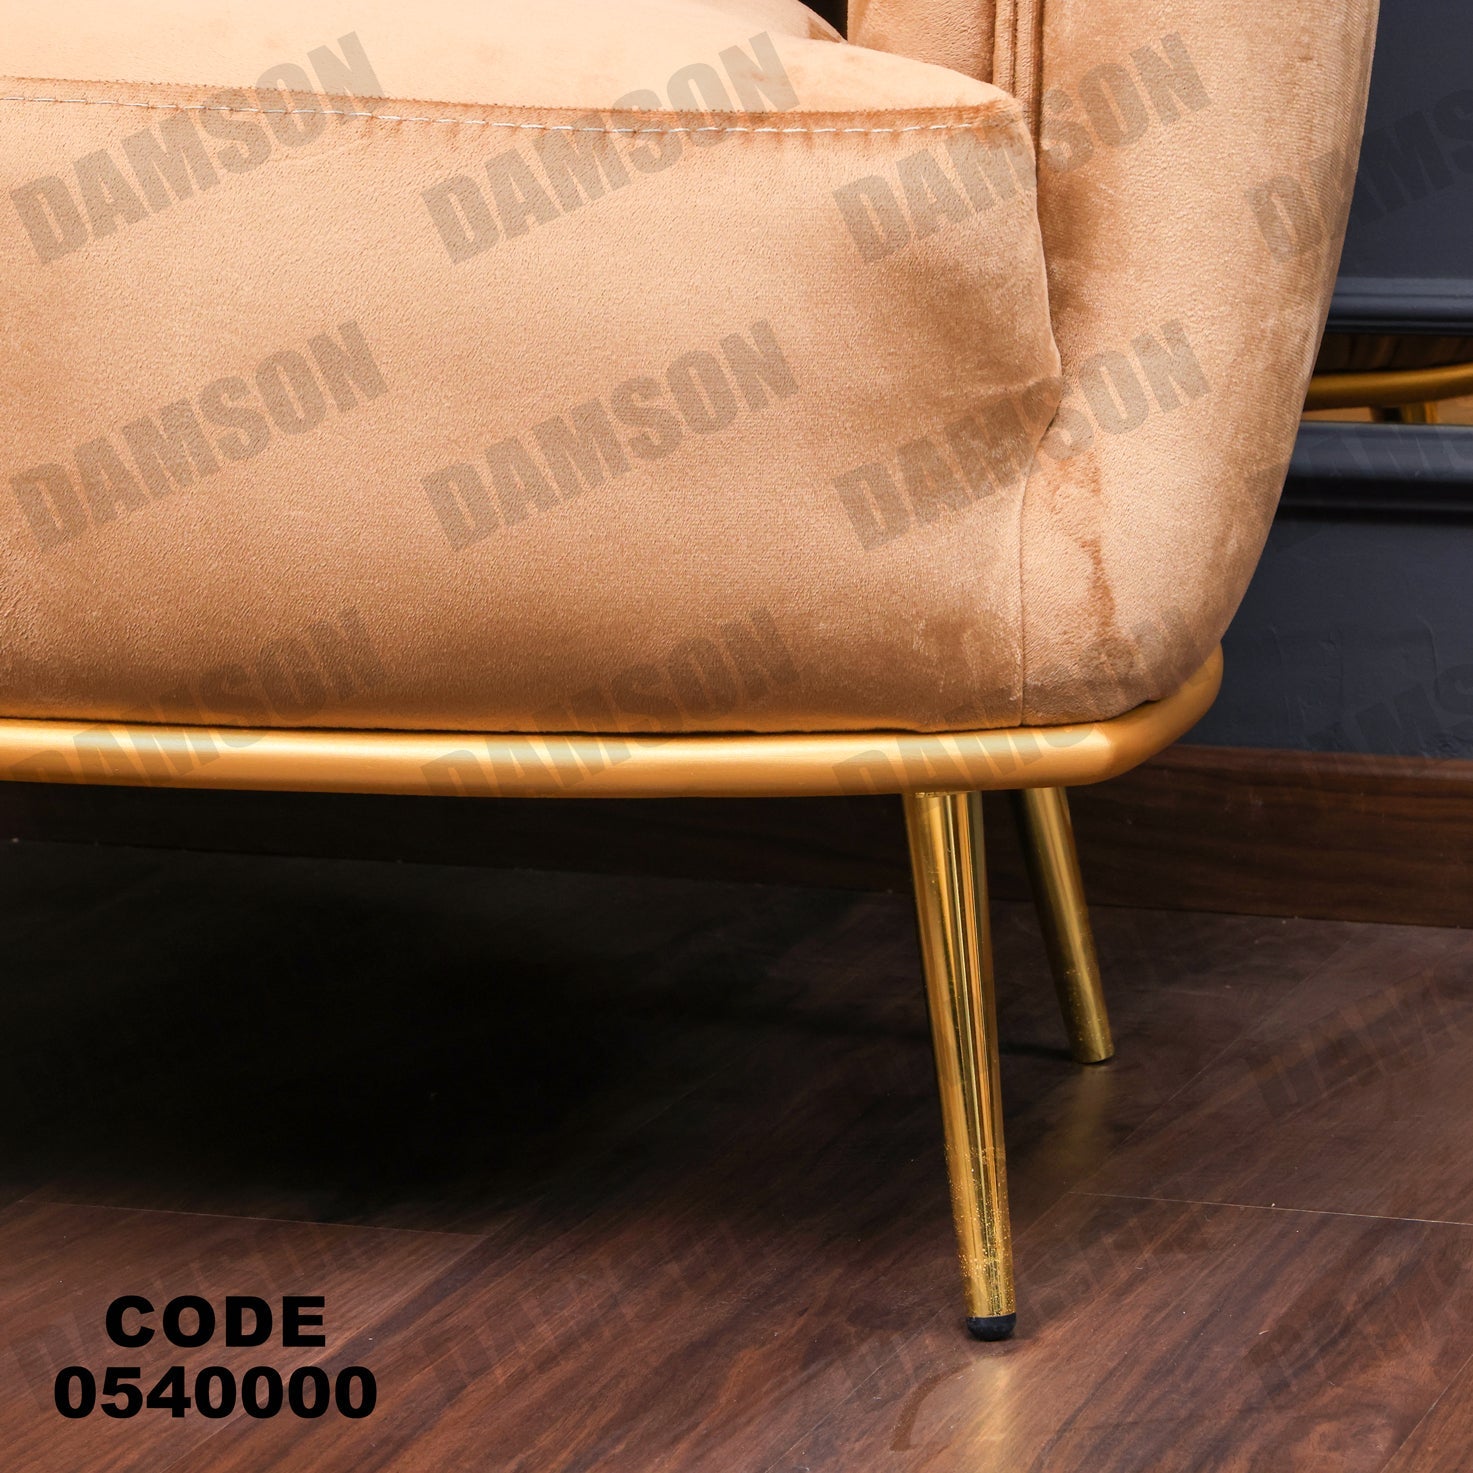 فوتية 1-400 - Damson Furnitureفوتية 1-400